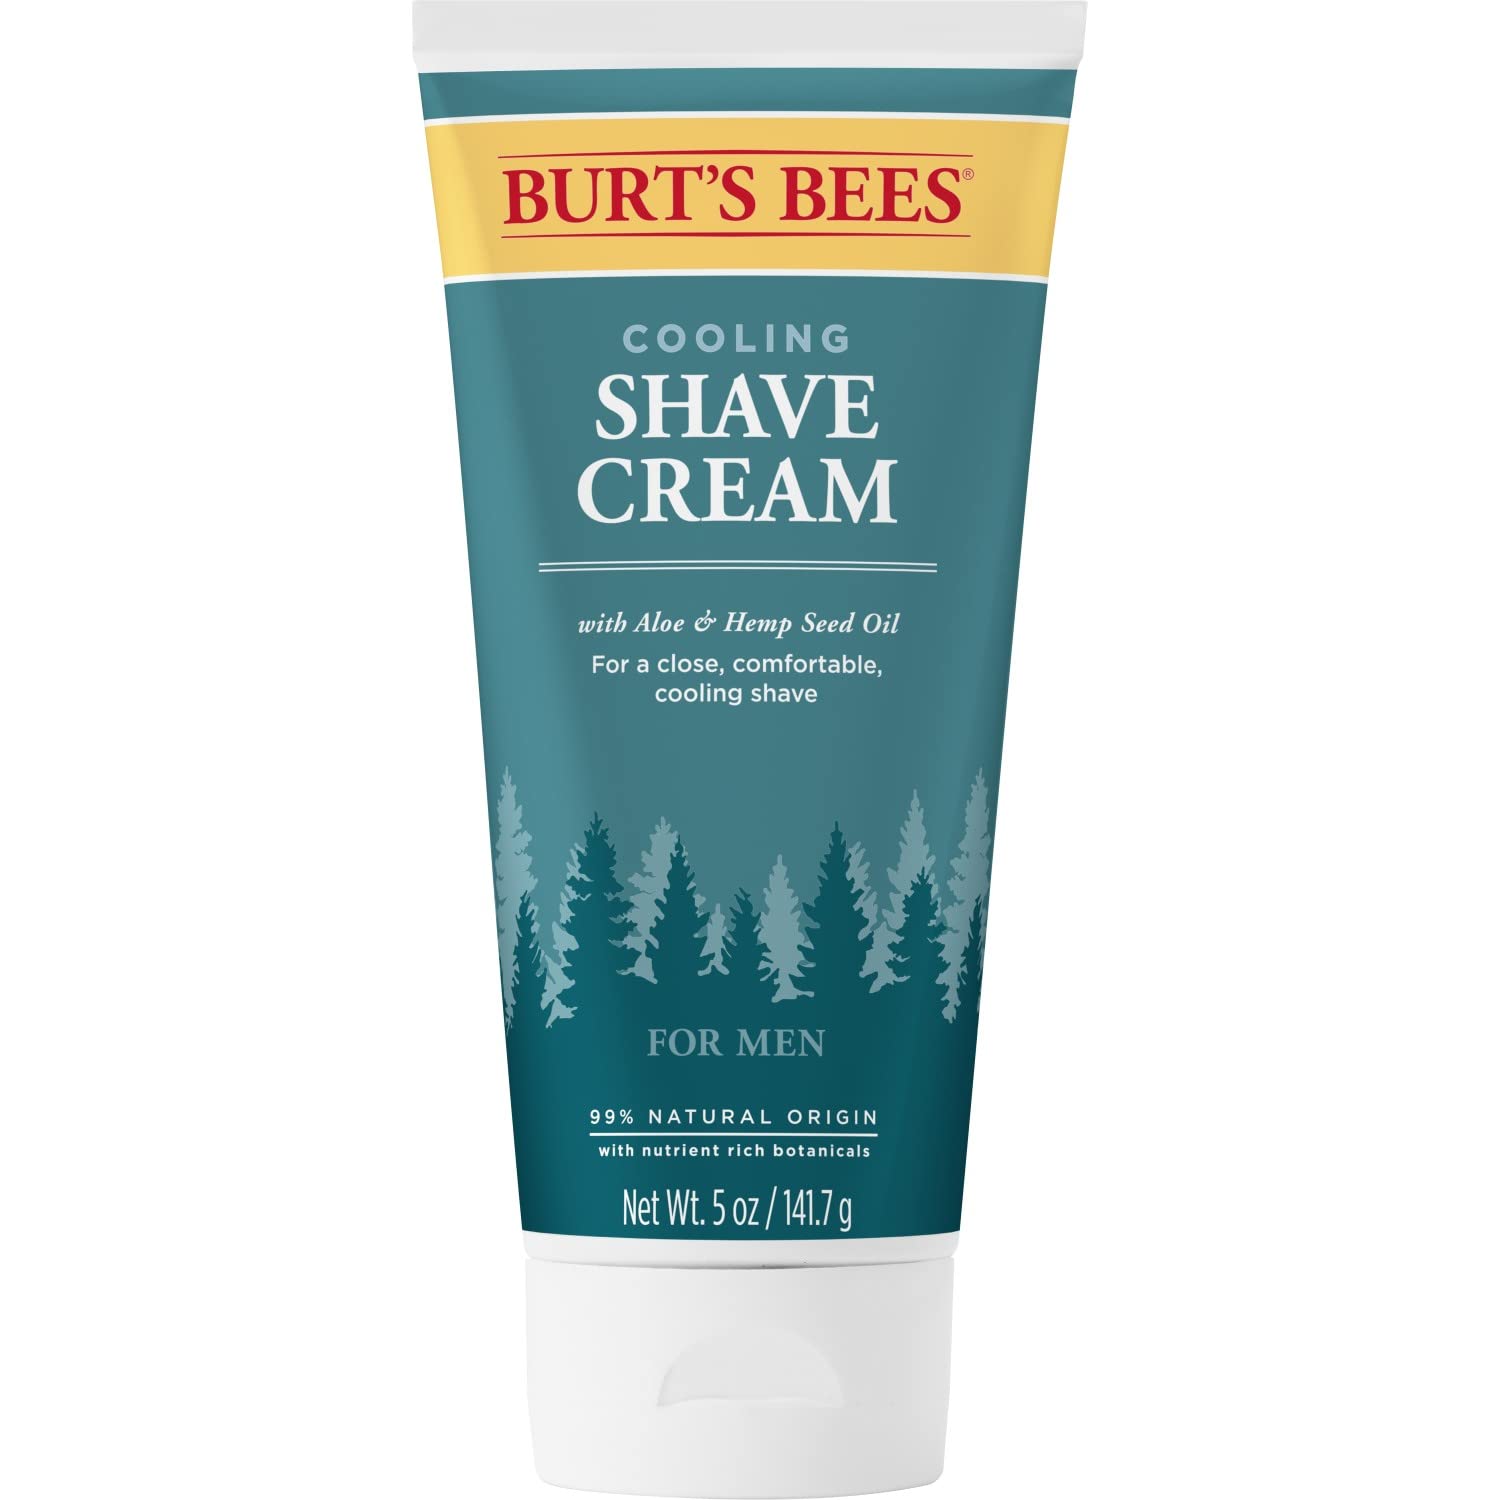 Burt's Bees Shaving Cream